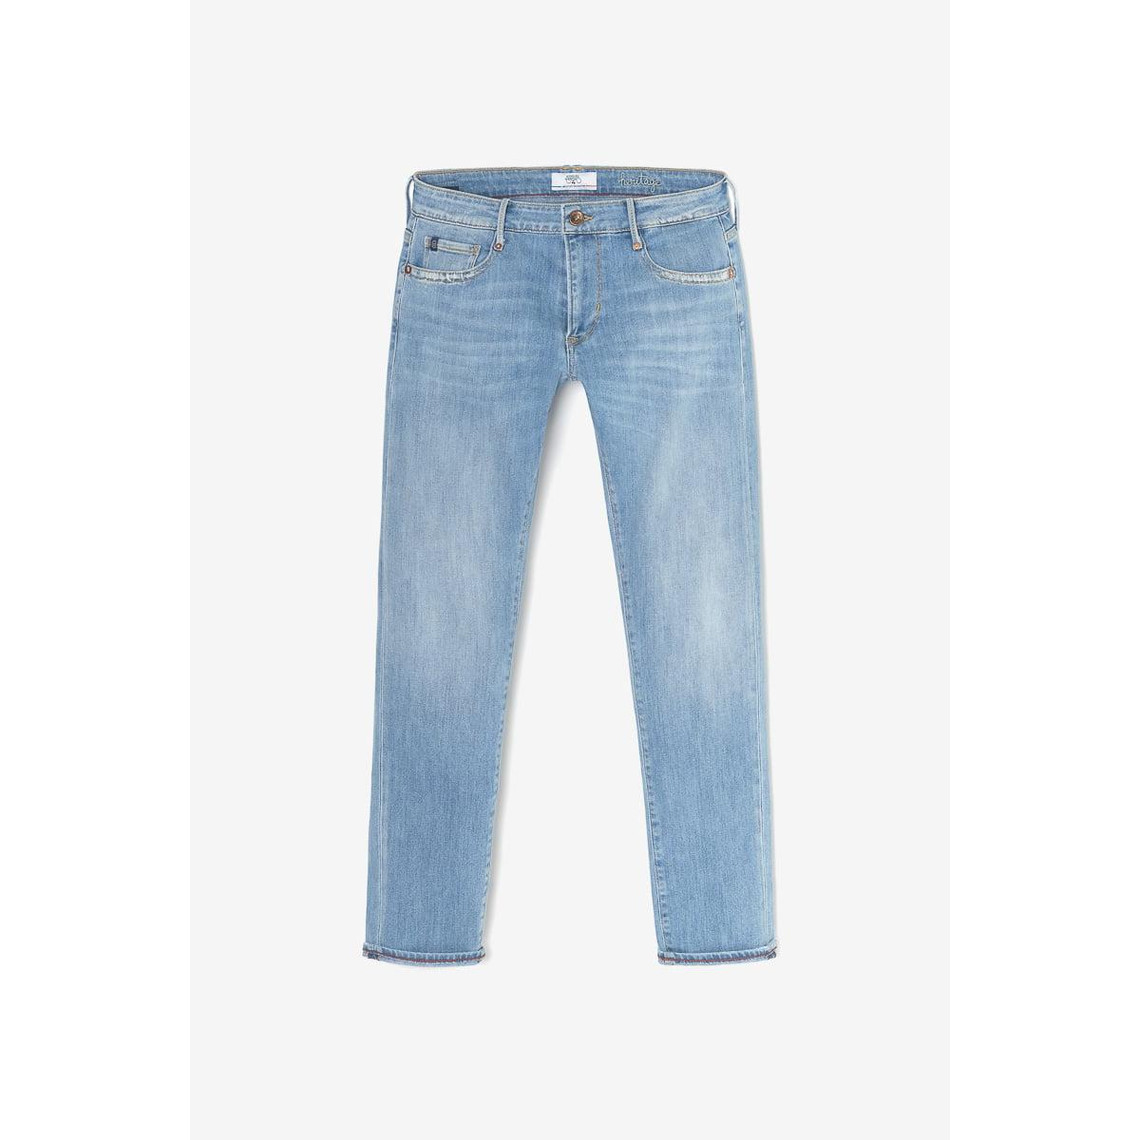 Jeans boyfit 200/43, longueur 34 bleu Pax